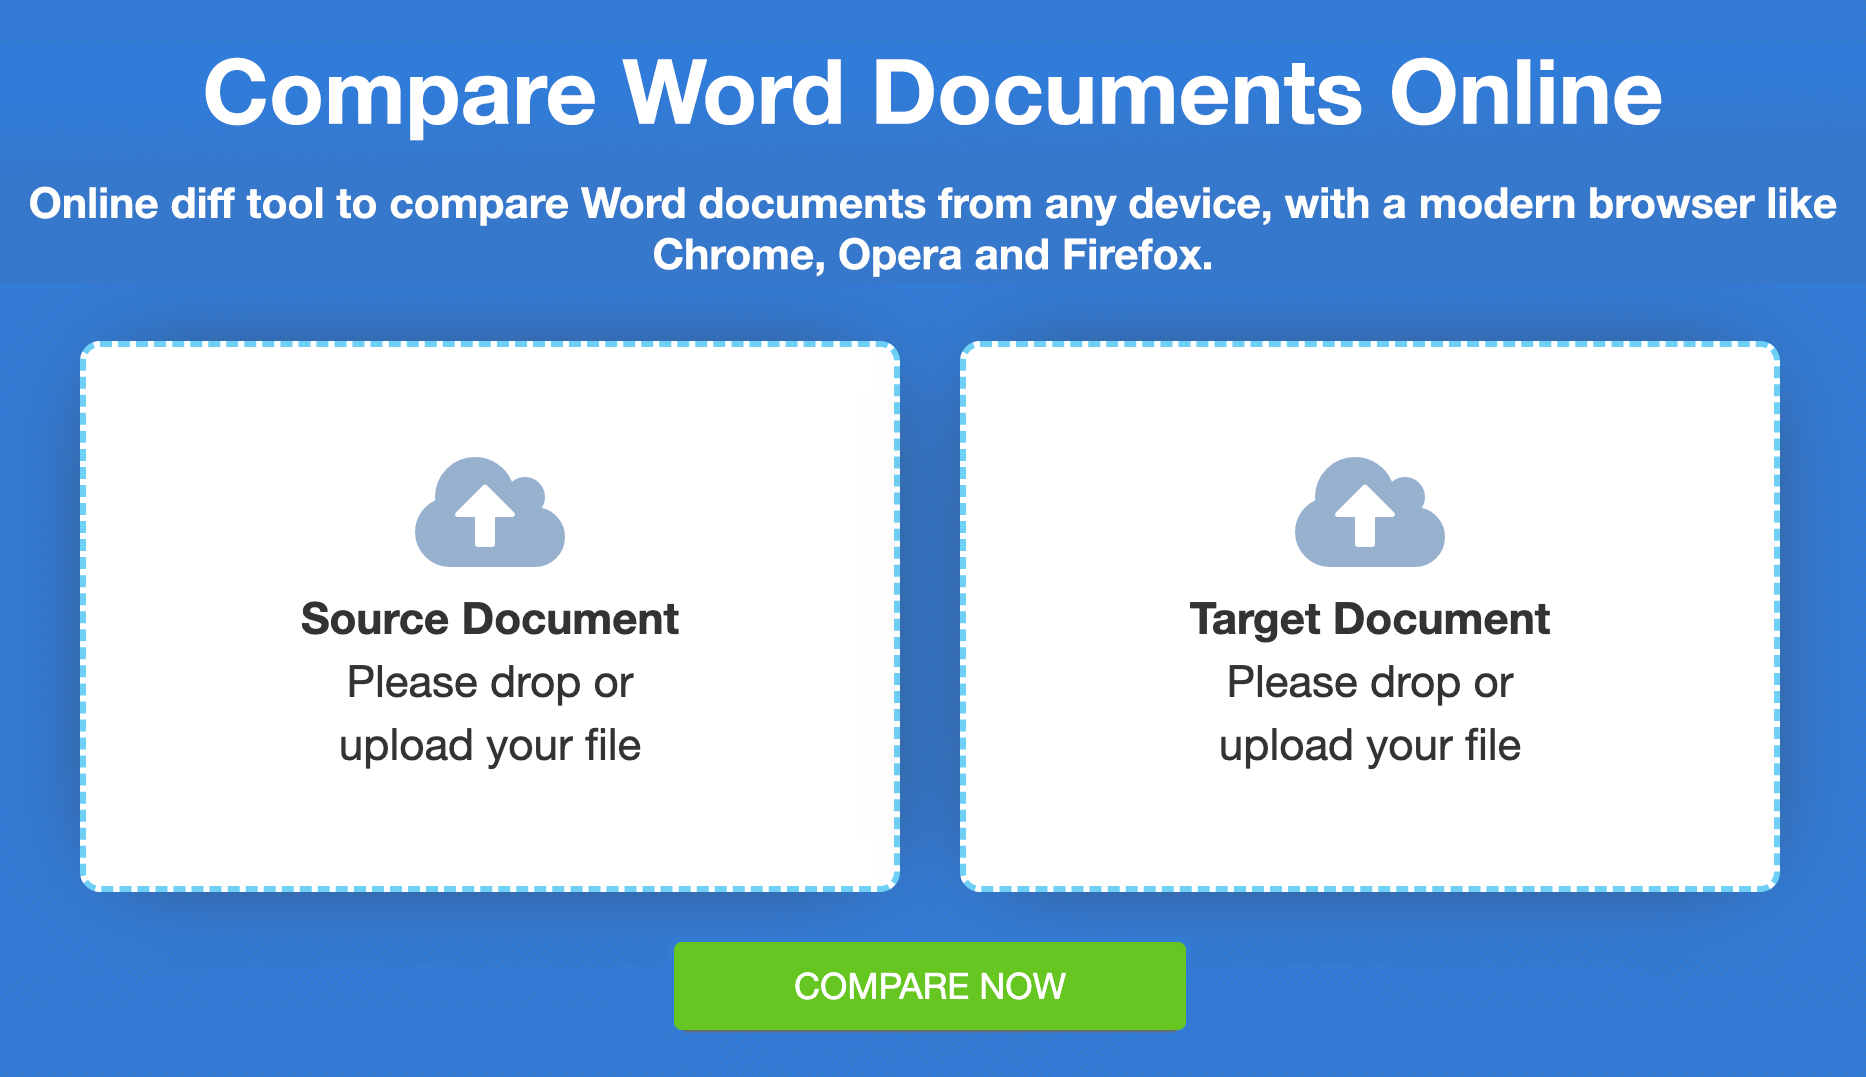 Bandingkan File Word - Perbandingan Online Gratis